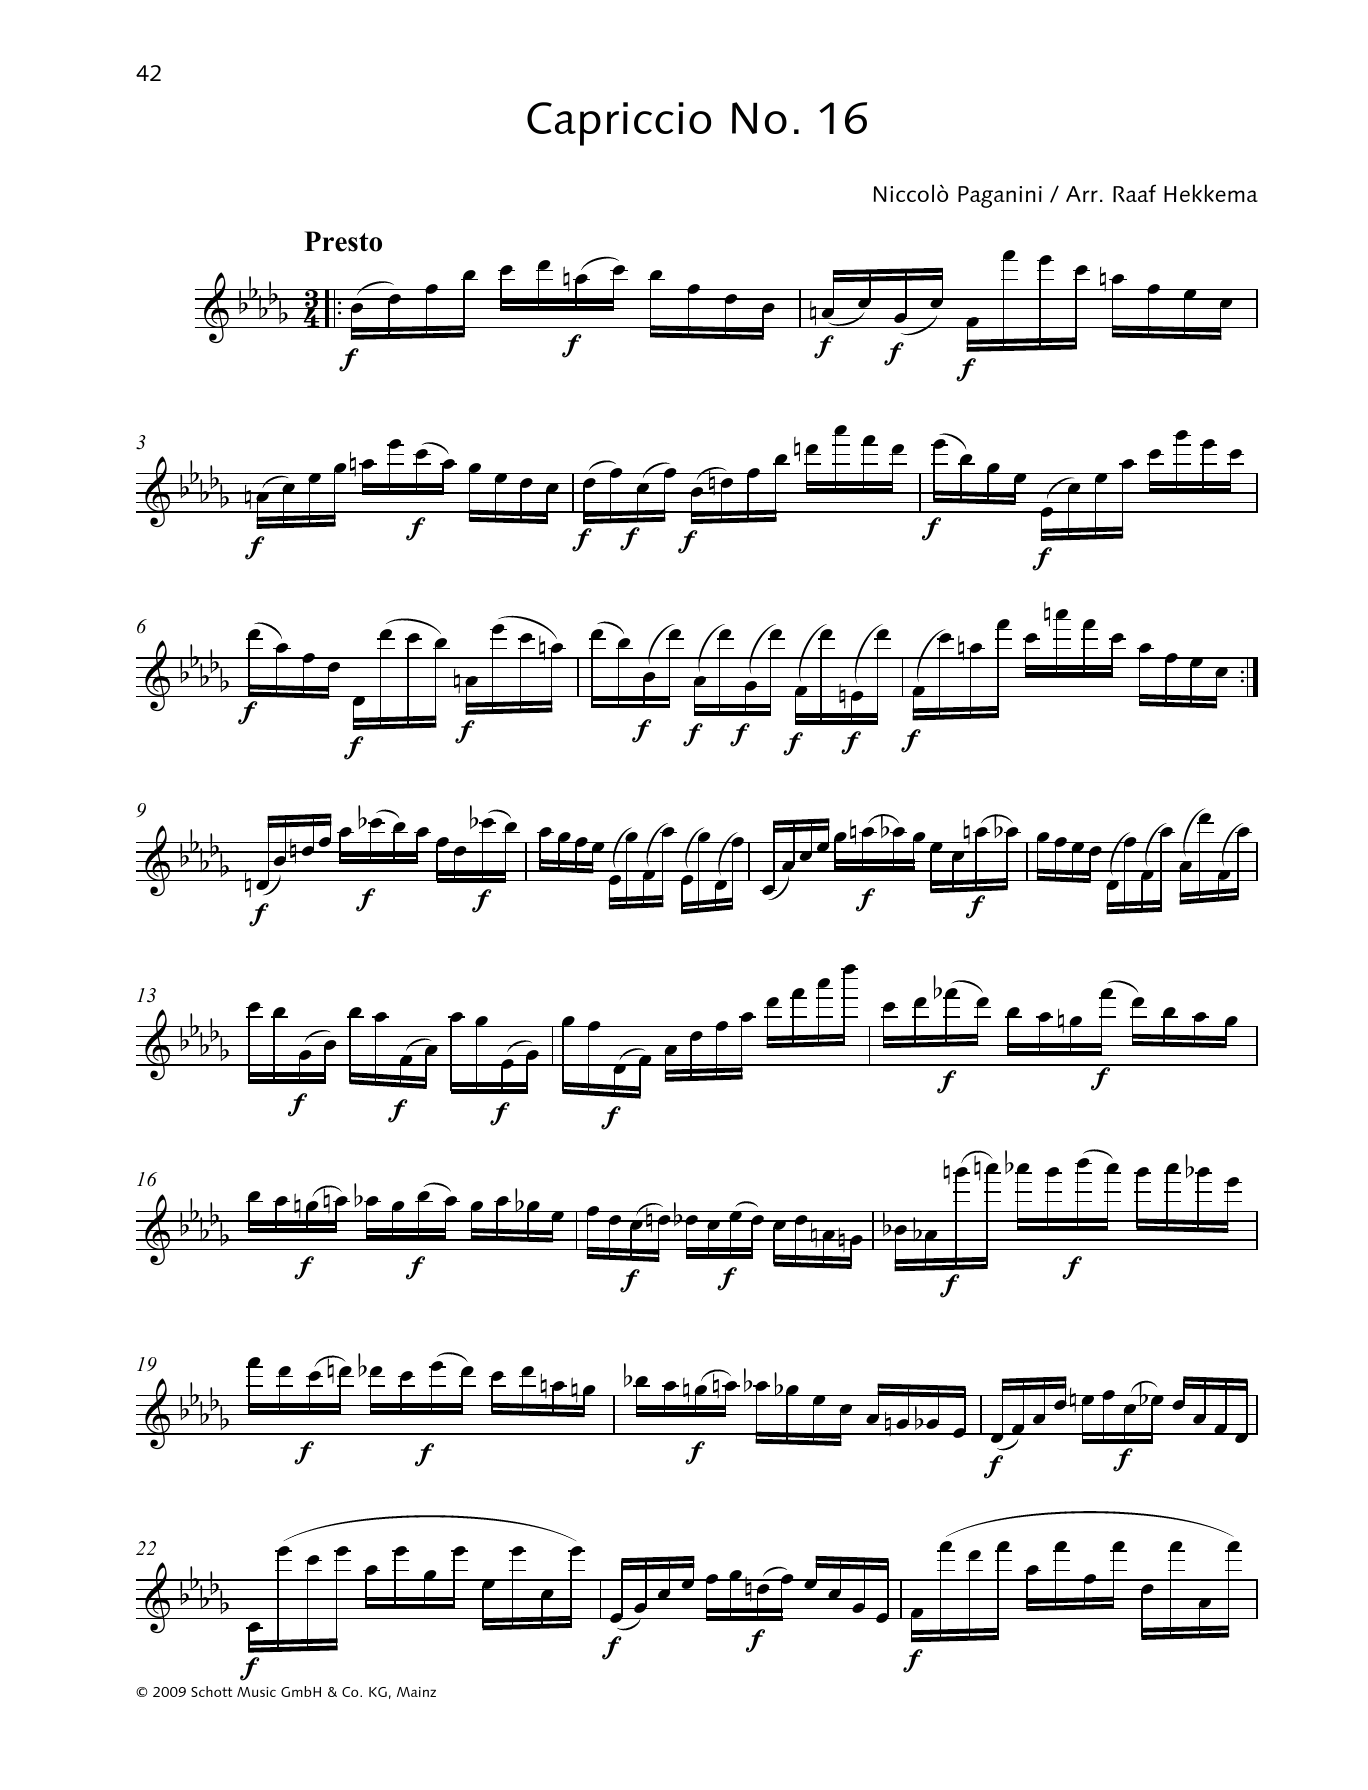 Download Niccolo Paganini Capriccio No. 16 Sheet Music